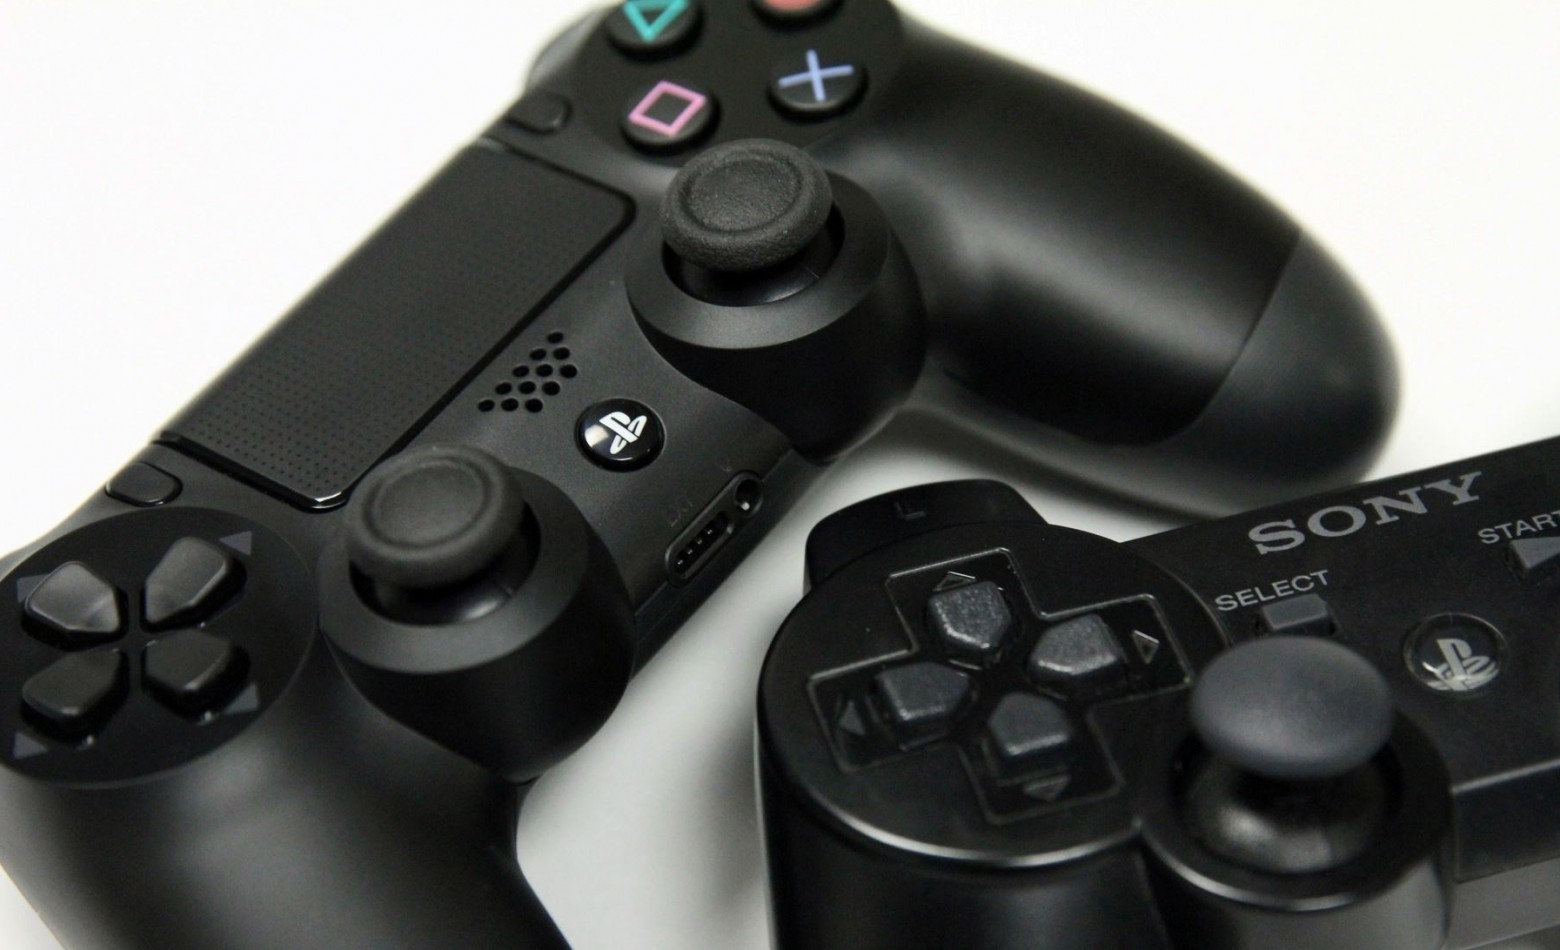 Nos EUA, PlayStation Now será lançada em 13 de janeiro com serviço de assinaturas [Atualizado]